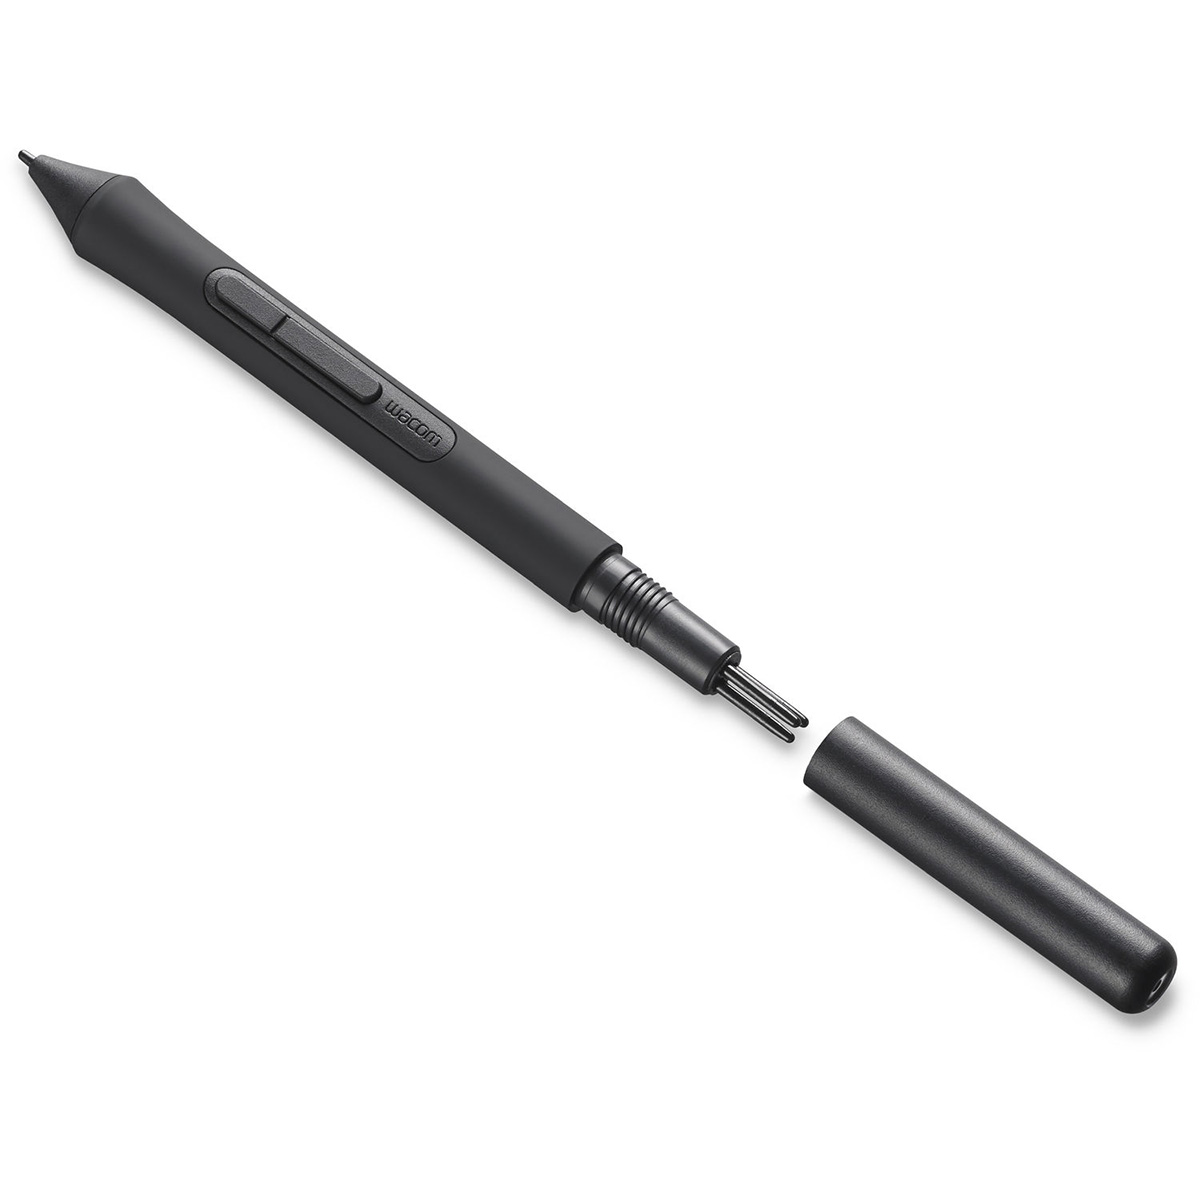 [กล่องมีตำหนิ ประกันร้าน 30 วัน] Wacom Intuos Pen Small รุ่น CTL-4100/K0-CX (Black)- ClearanceSale